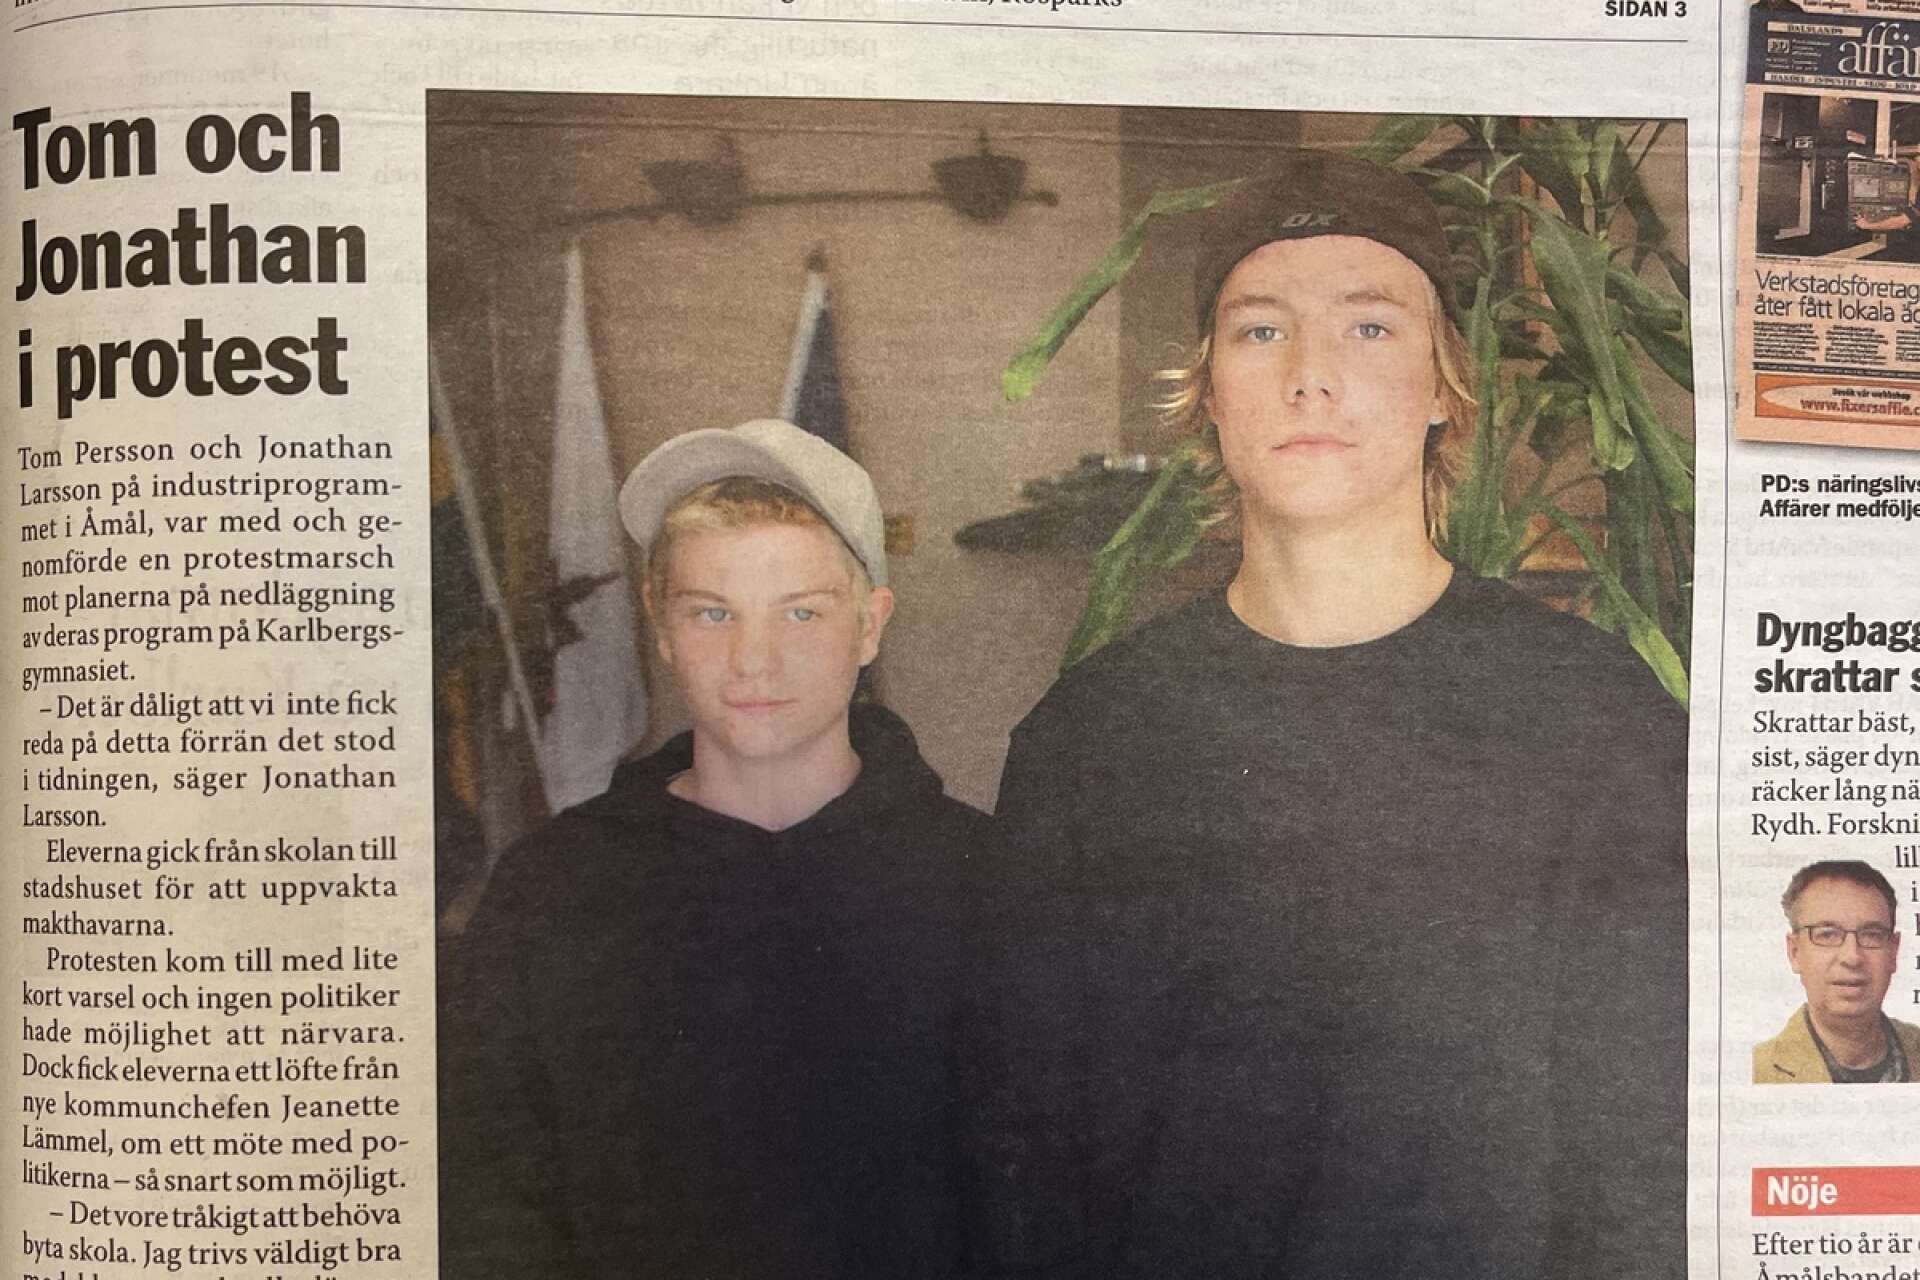 Tom Persson och Jonathan Larsson var två av de elever som protesterade mot en planerad nedläggning av industriprogrammet på Karlbergsgymnasiet.